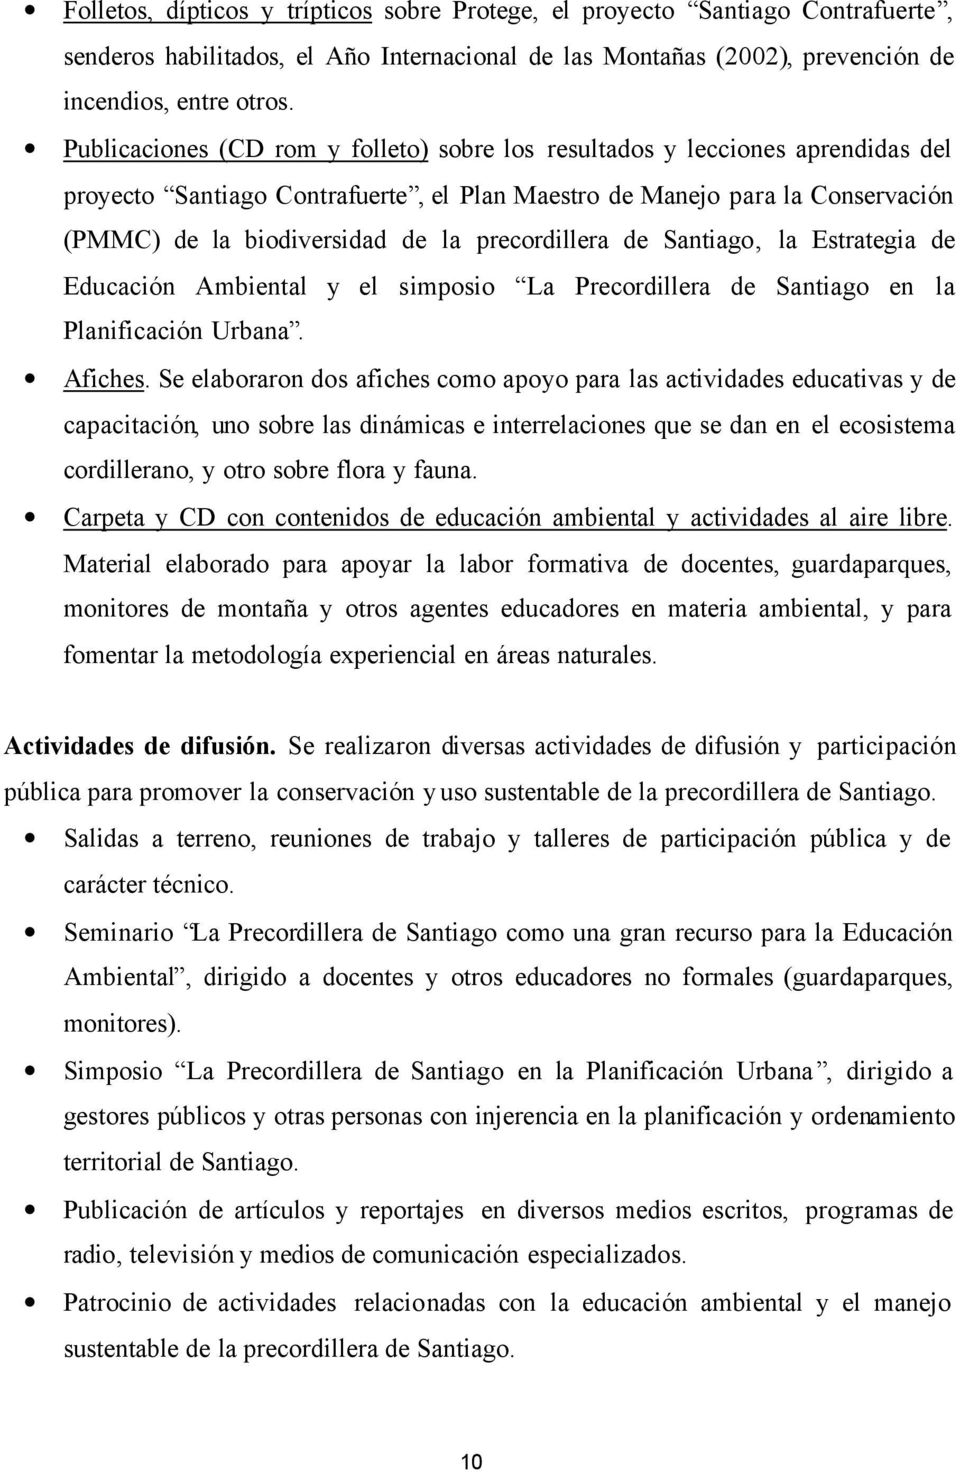 precordillera de Santiago, la Estrategia de Educación Ambiental y el simposio La Precordillera de Santiago en la Planificación Urbana. Afiches.